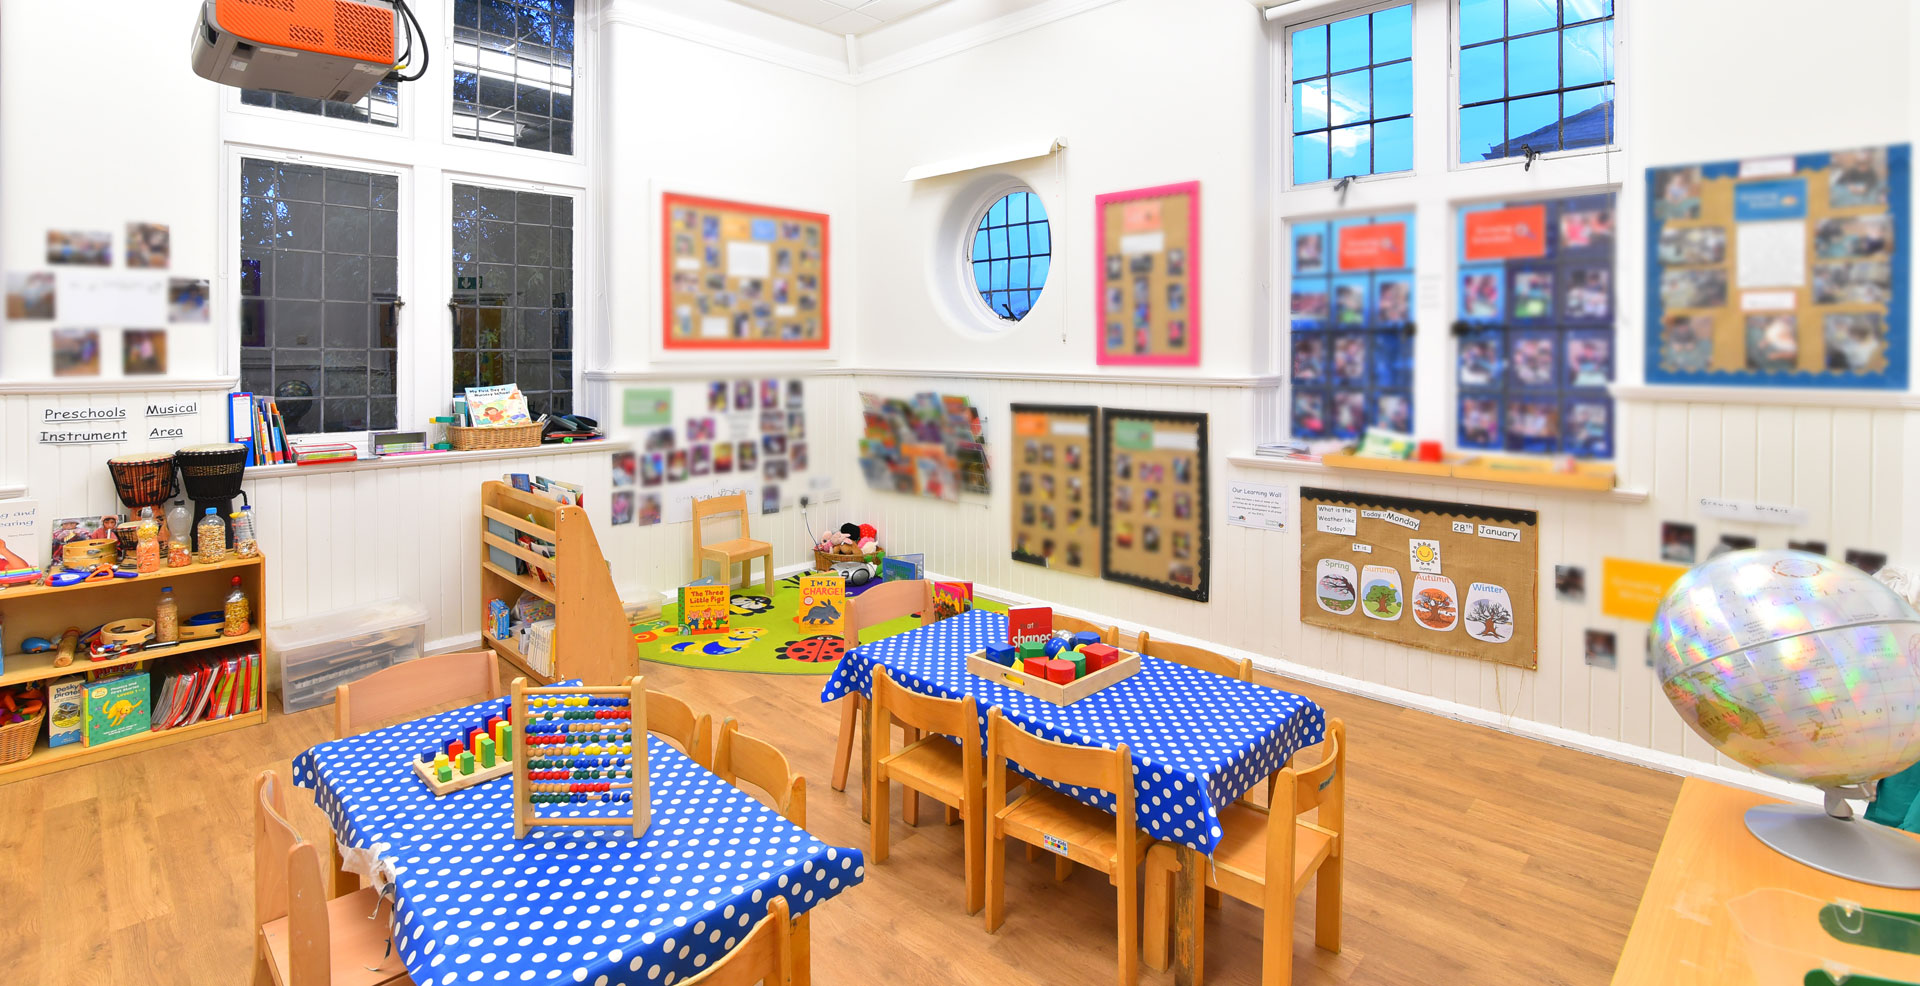 Weybridge Day Nursery and Preschool